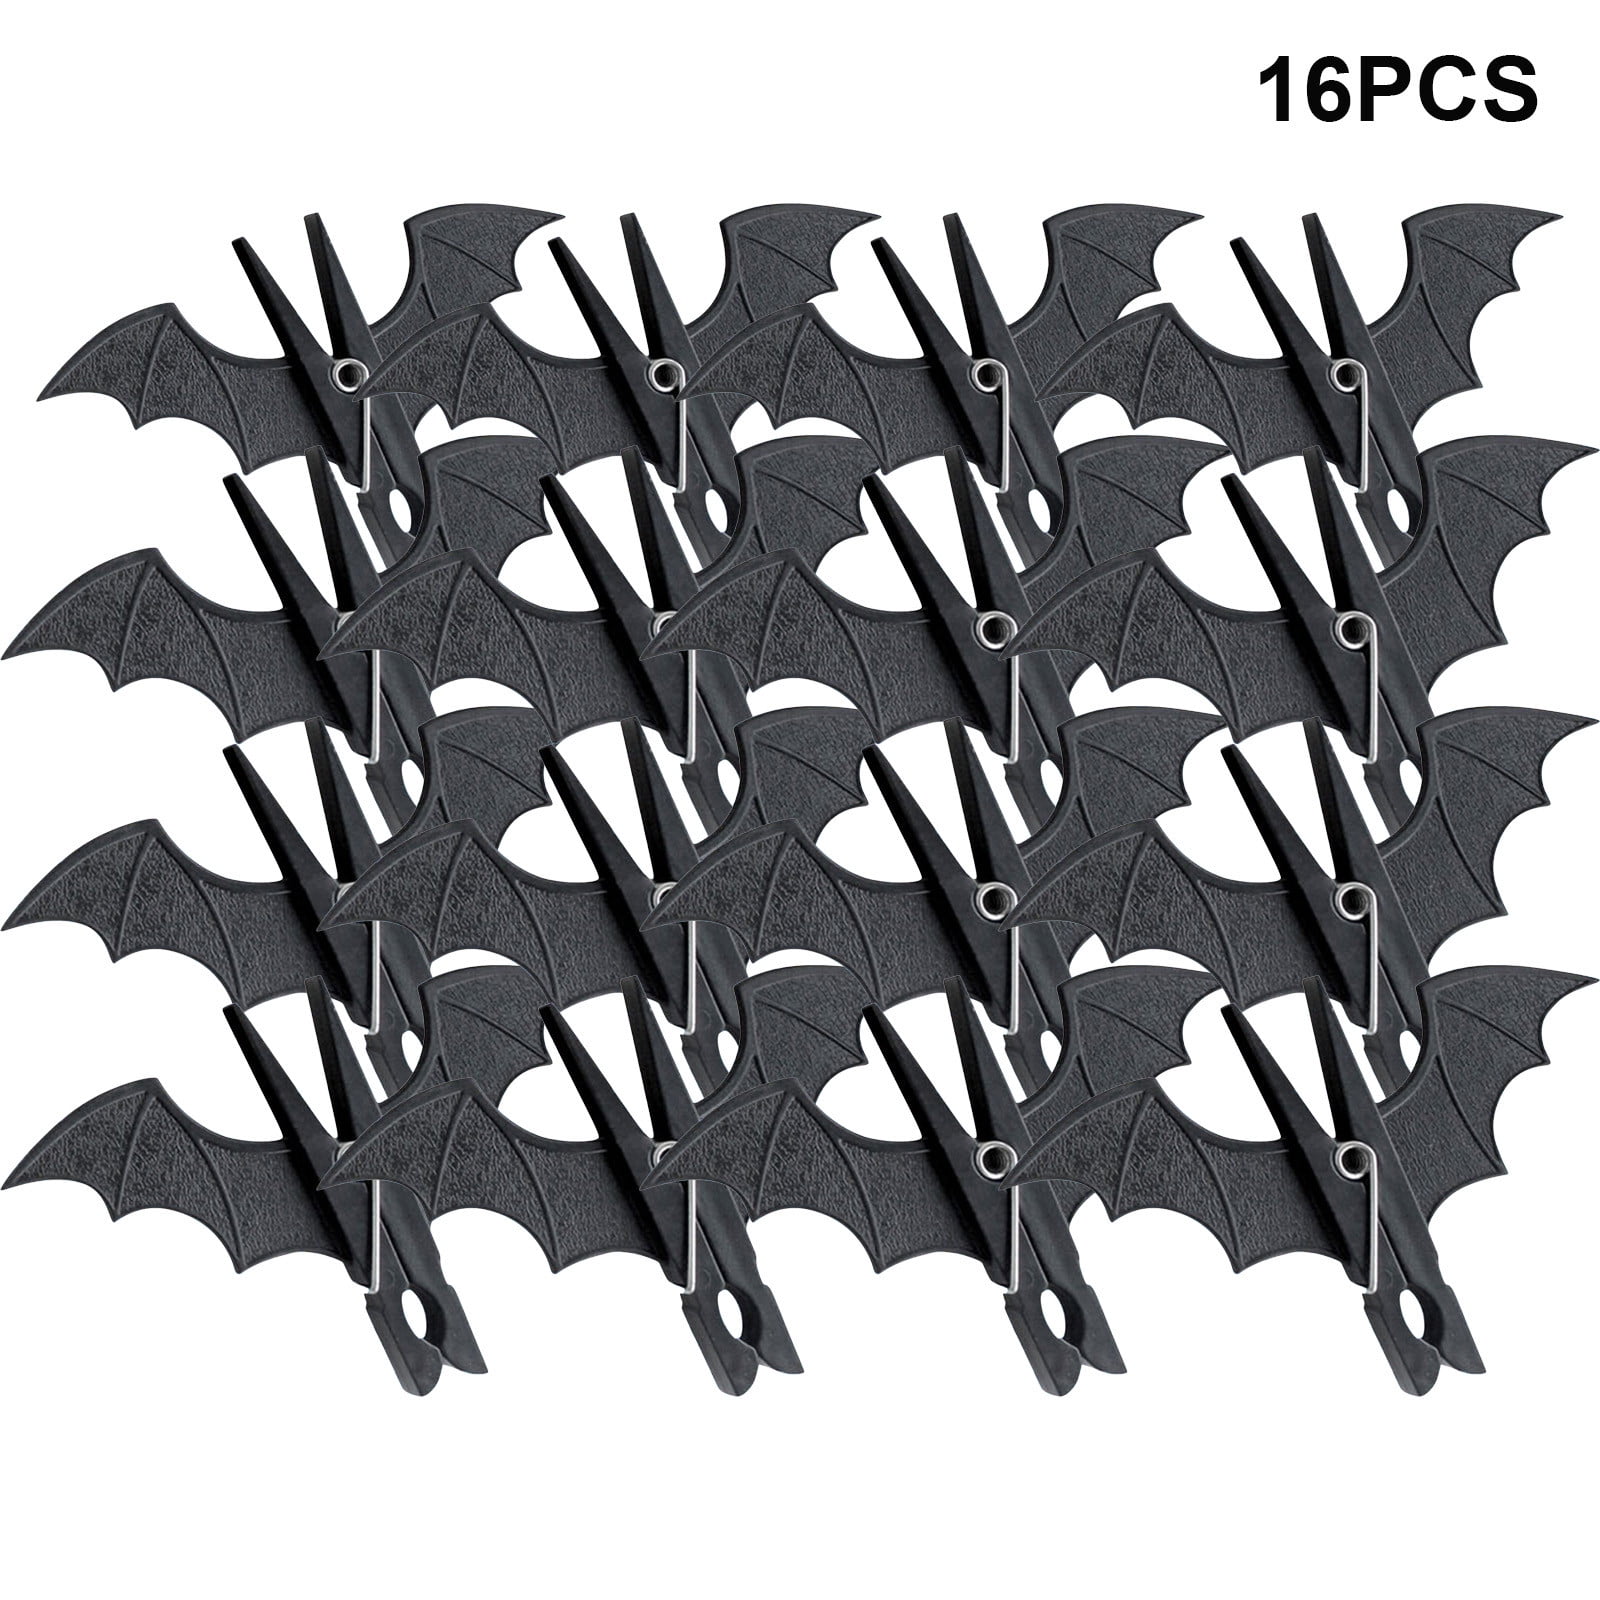 Li HB Store 16pcs Halloween Black Clothes Pins, Windproof Non-Slip